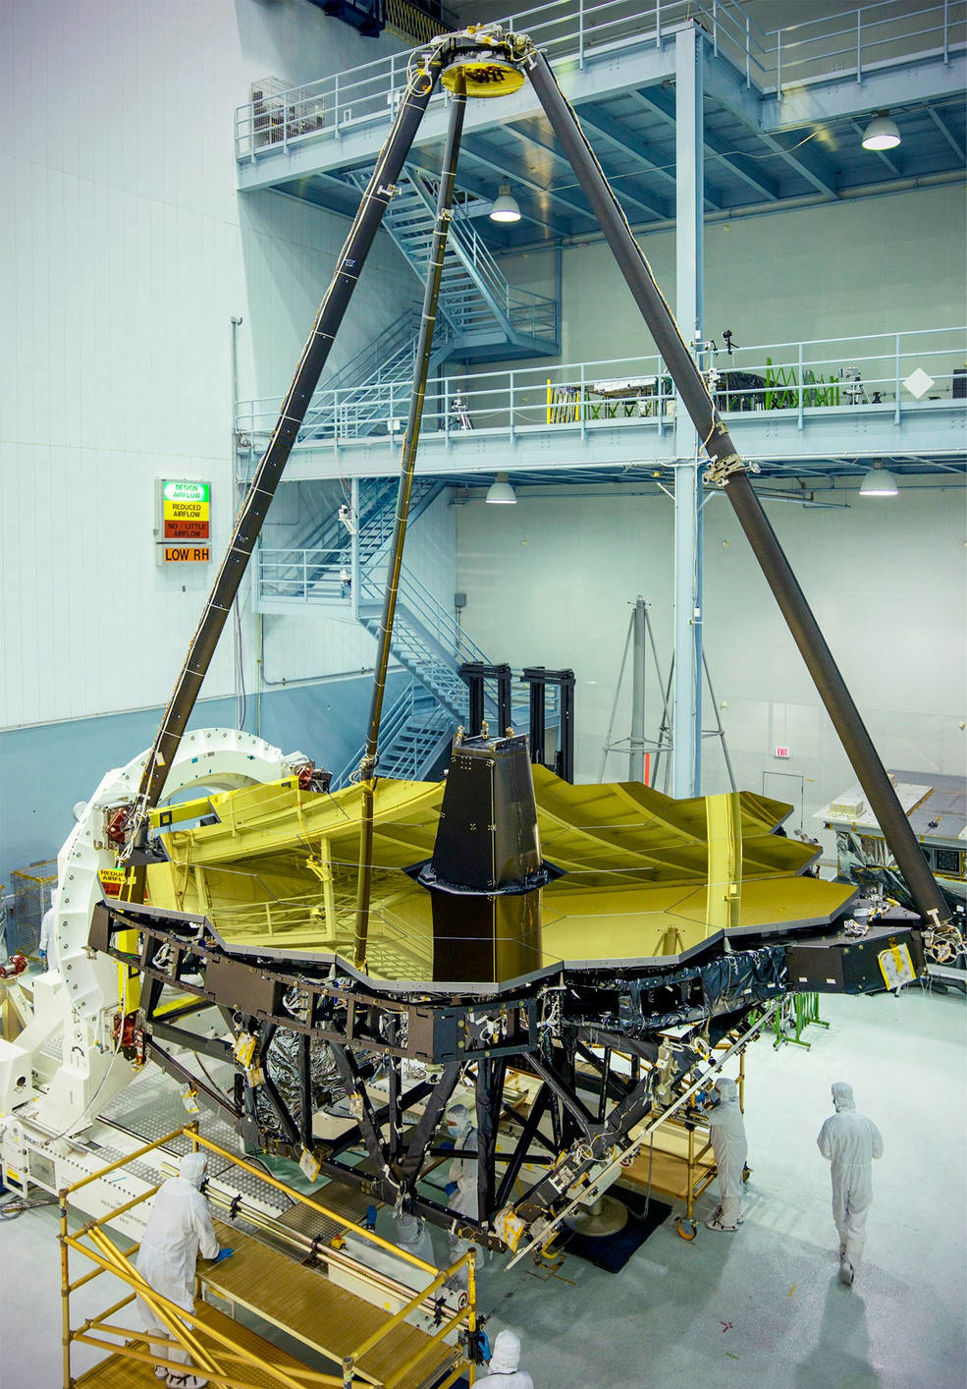  Här visas rymdteleskopets guldgula stora spegel upp i sin helhet för första gången. 